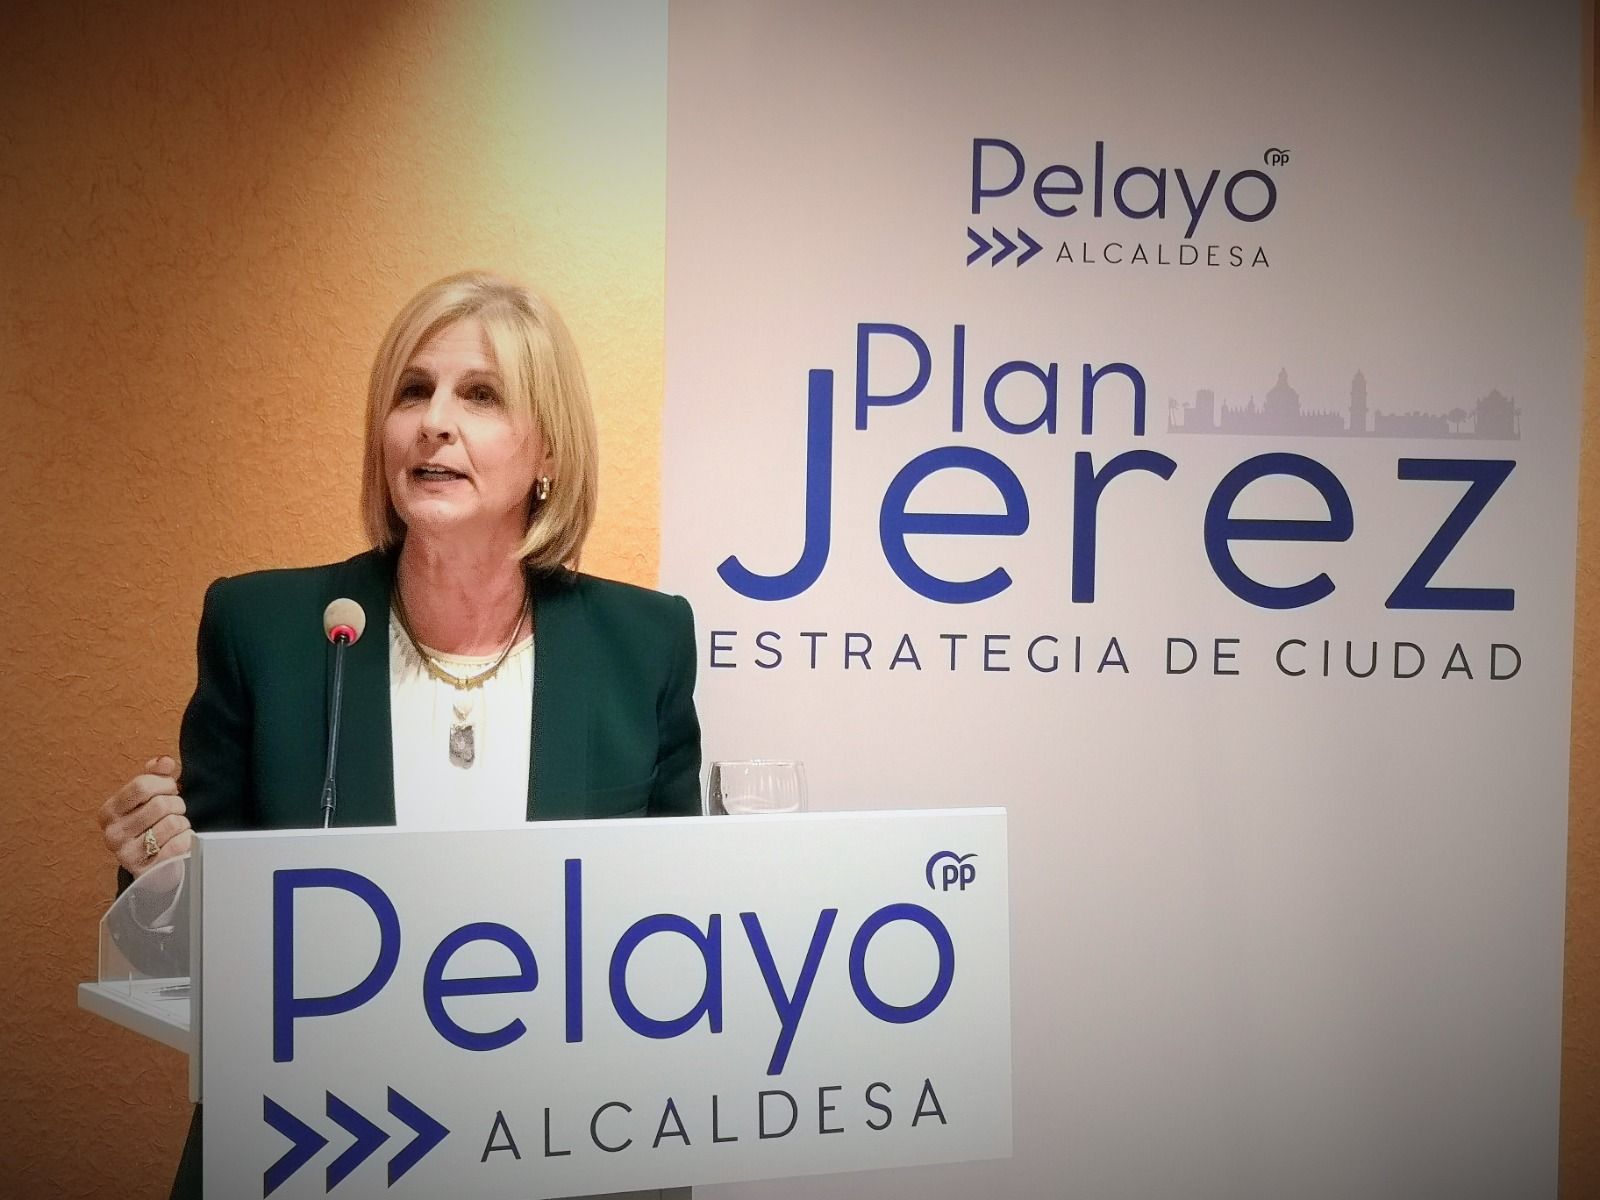 María José García-Pelayo, candidata del PP a la alcaldía de Jerez, durante la rueda de prensa en el hotel Asta Regia.